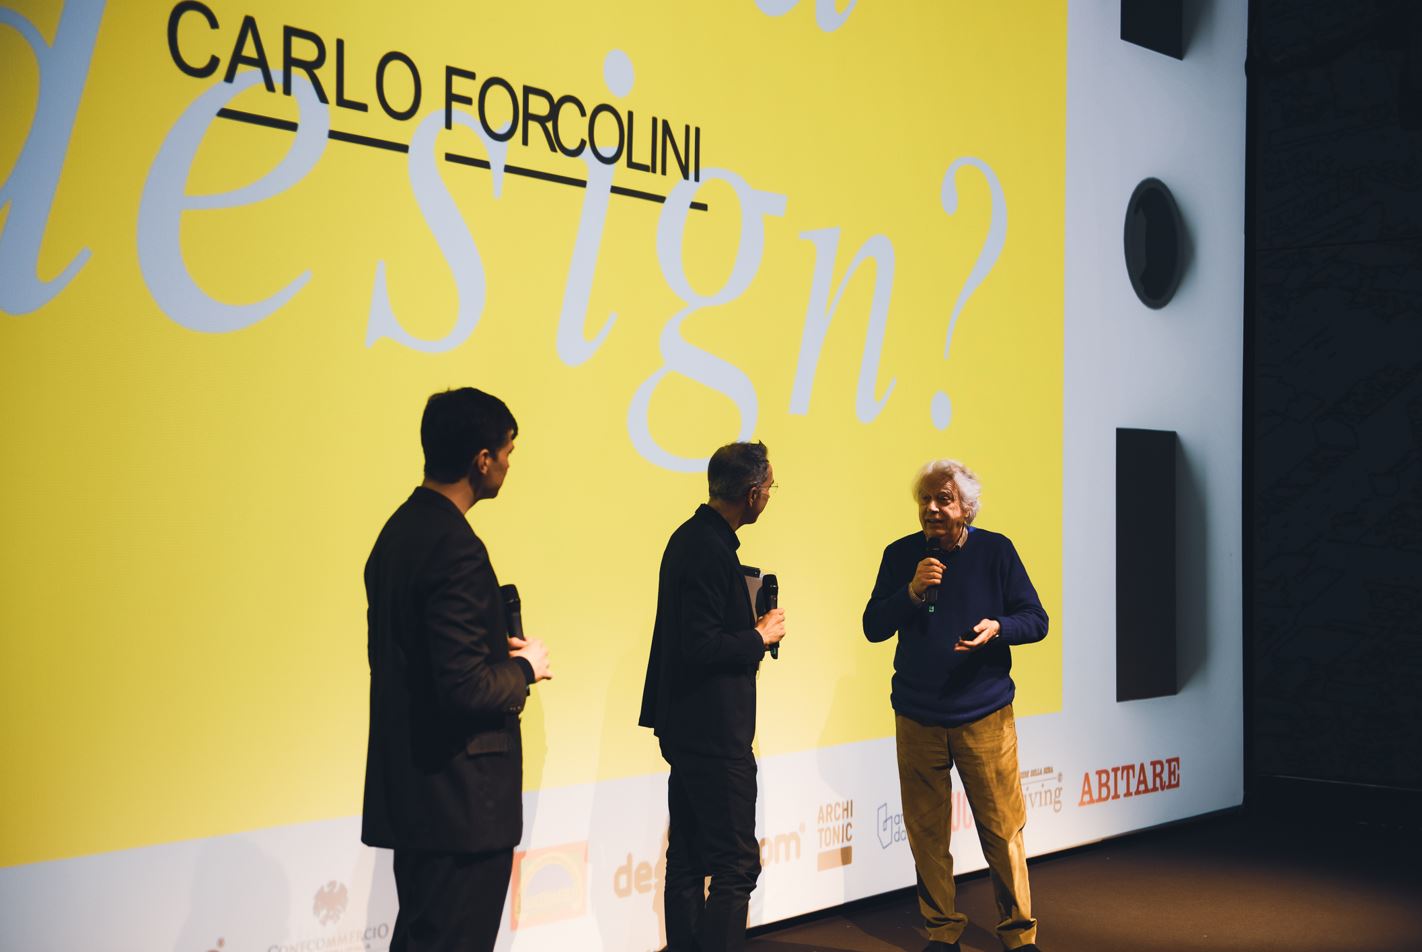 Presentazione (Forcolini). Photo: Alberto Alzani